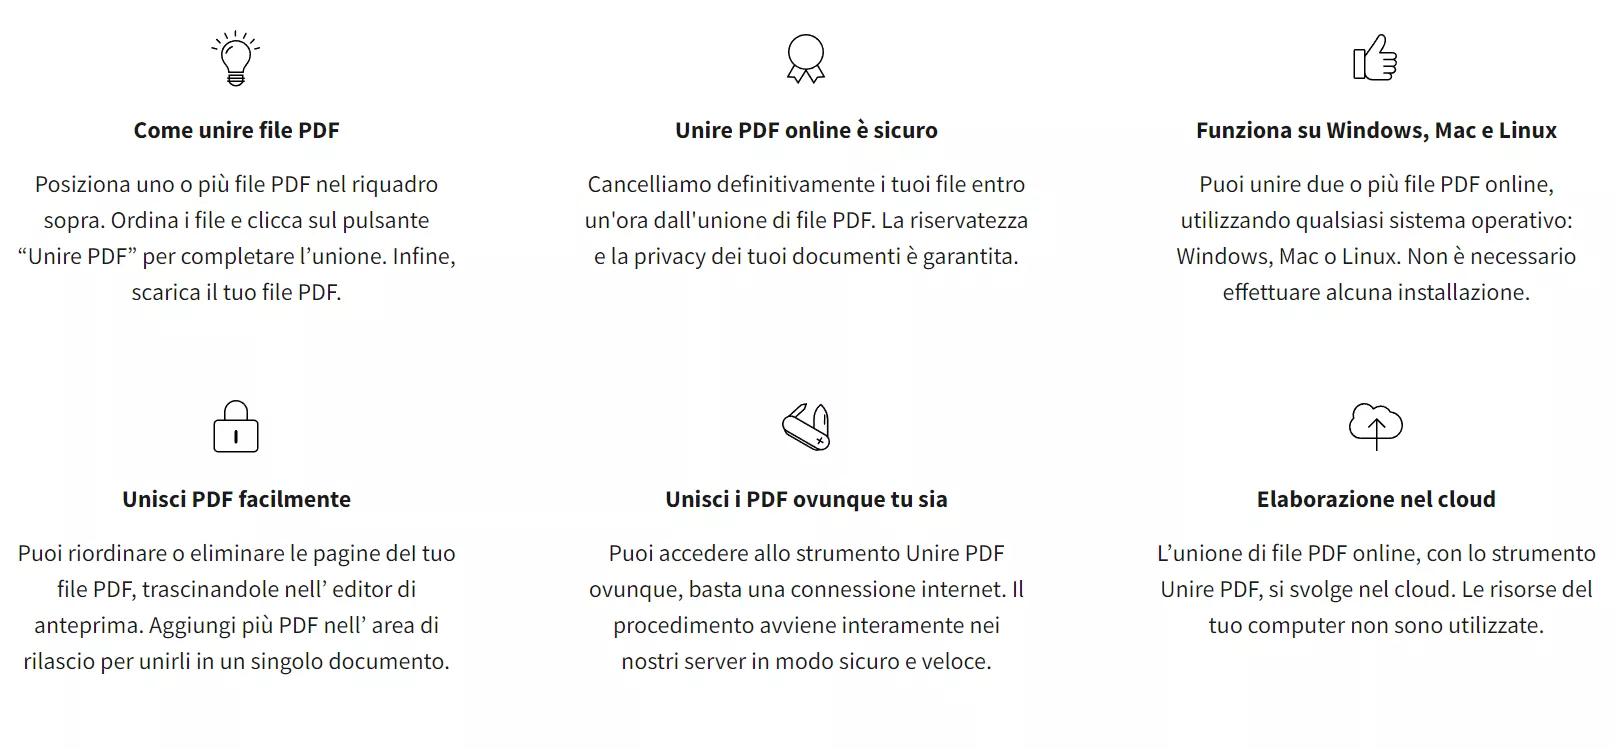 Vantaggi e svantaggi dell'unione di PDF con Smallpdf